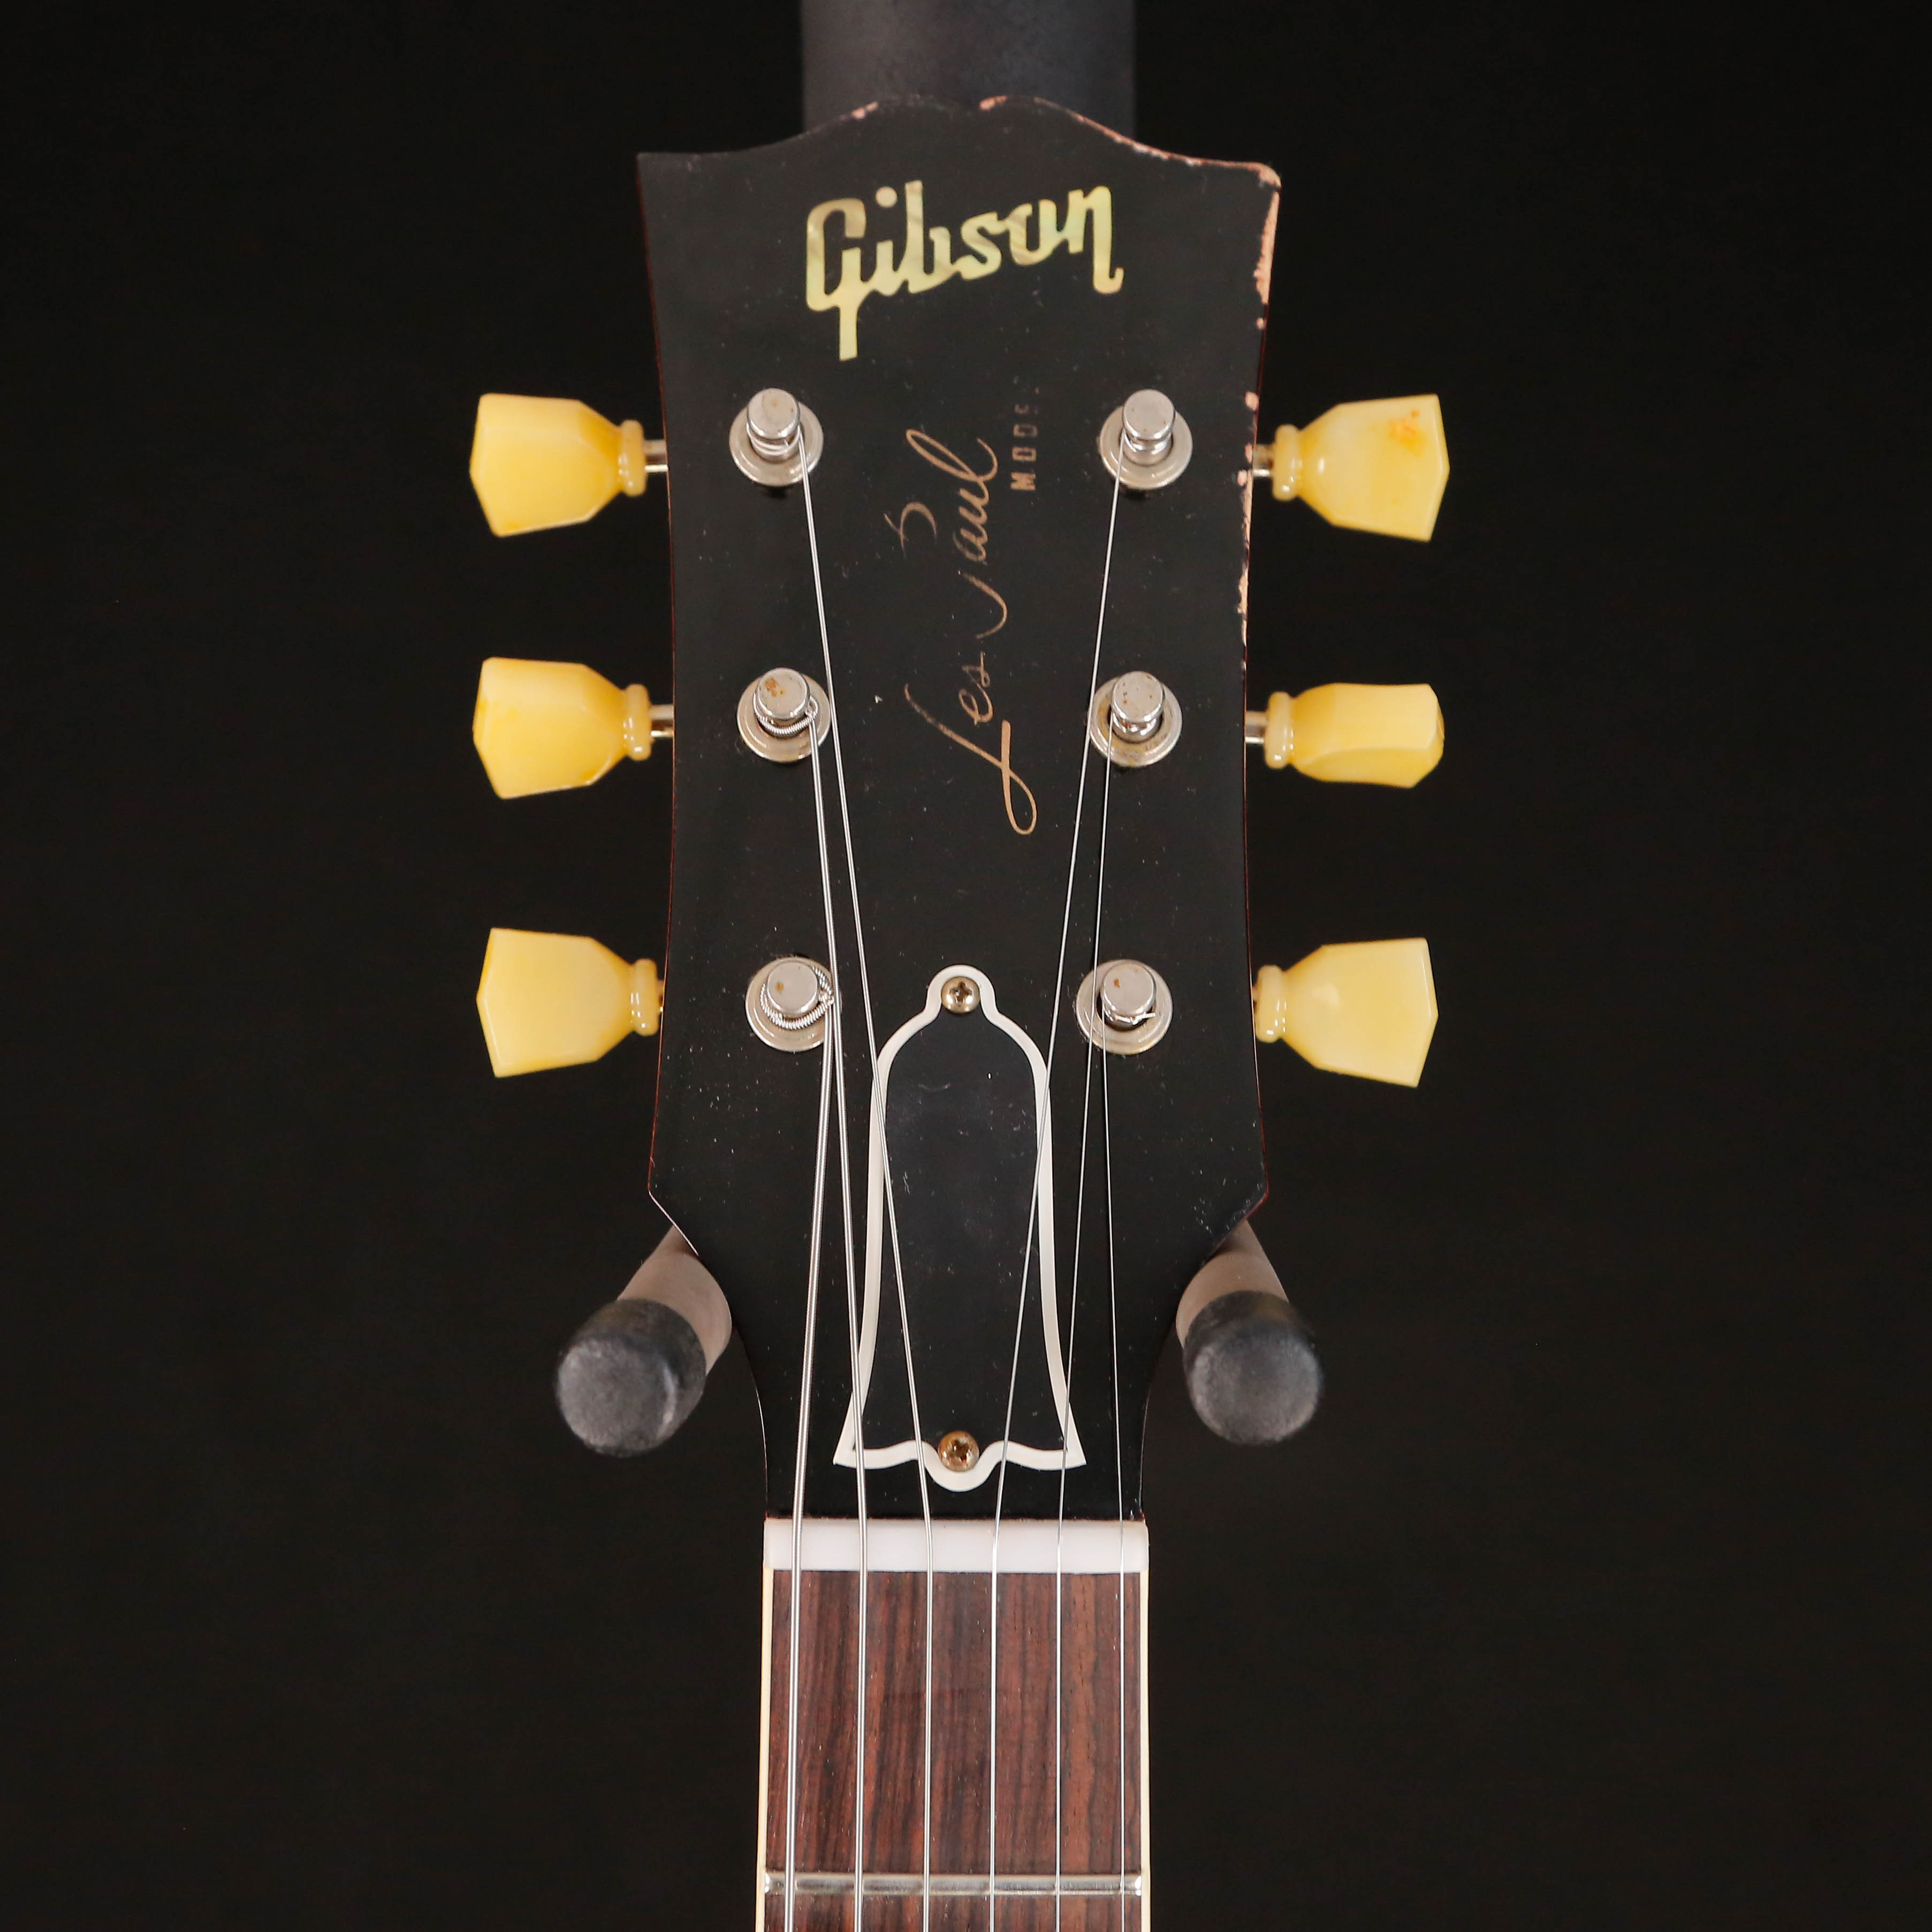 Gibson Custom 59 Les Paul Standard Reissue, Murphys Lab Golden Poppy Burst